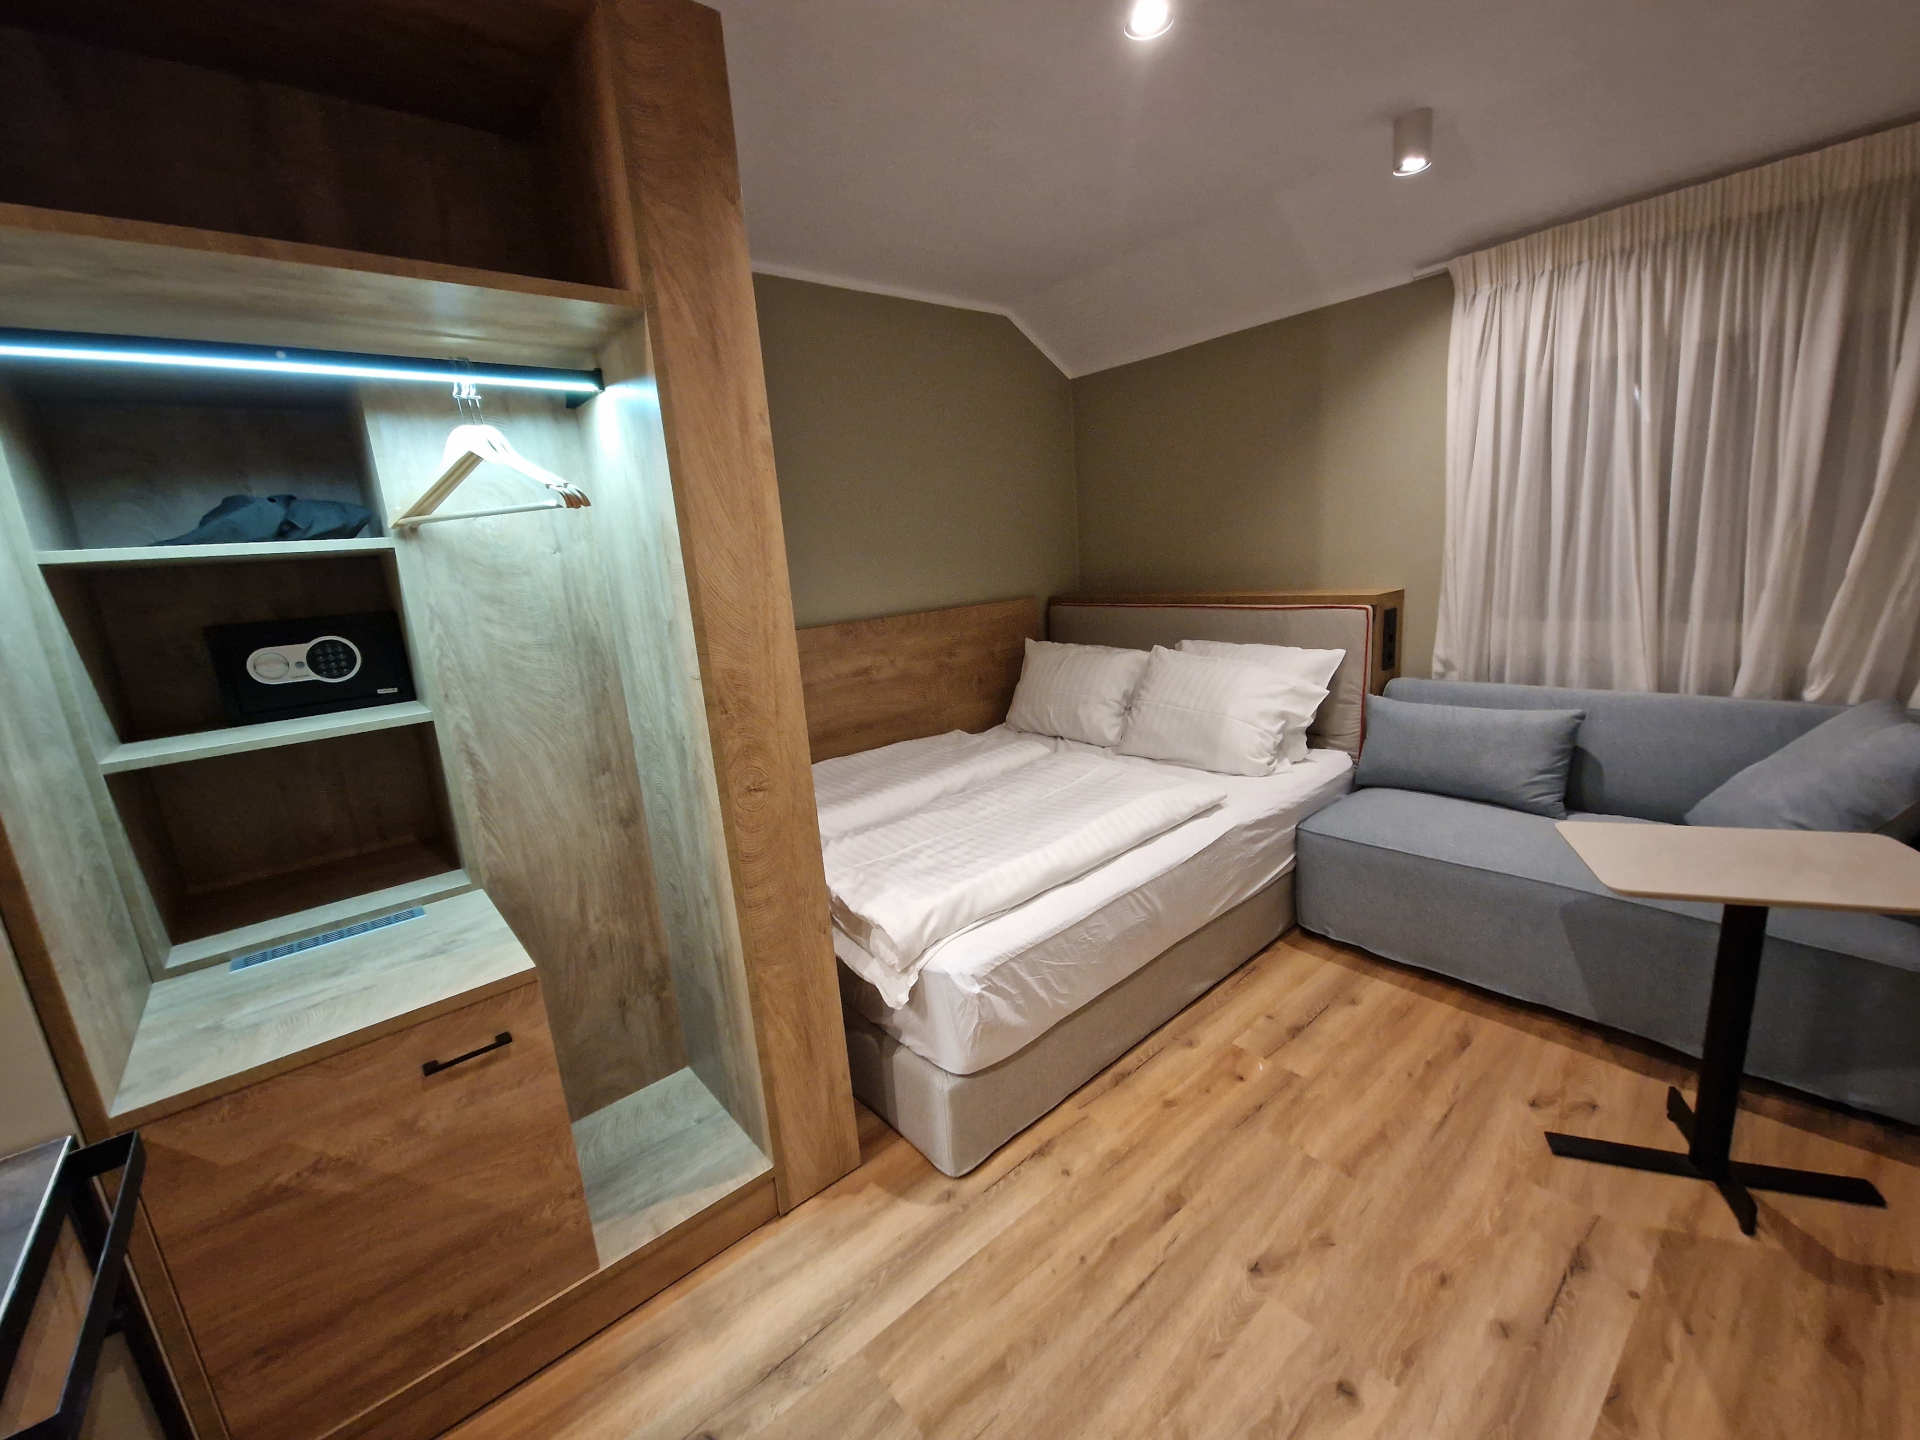 Doppelzimmer Budget im Hotel Wehra in wt